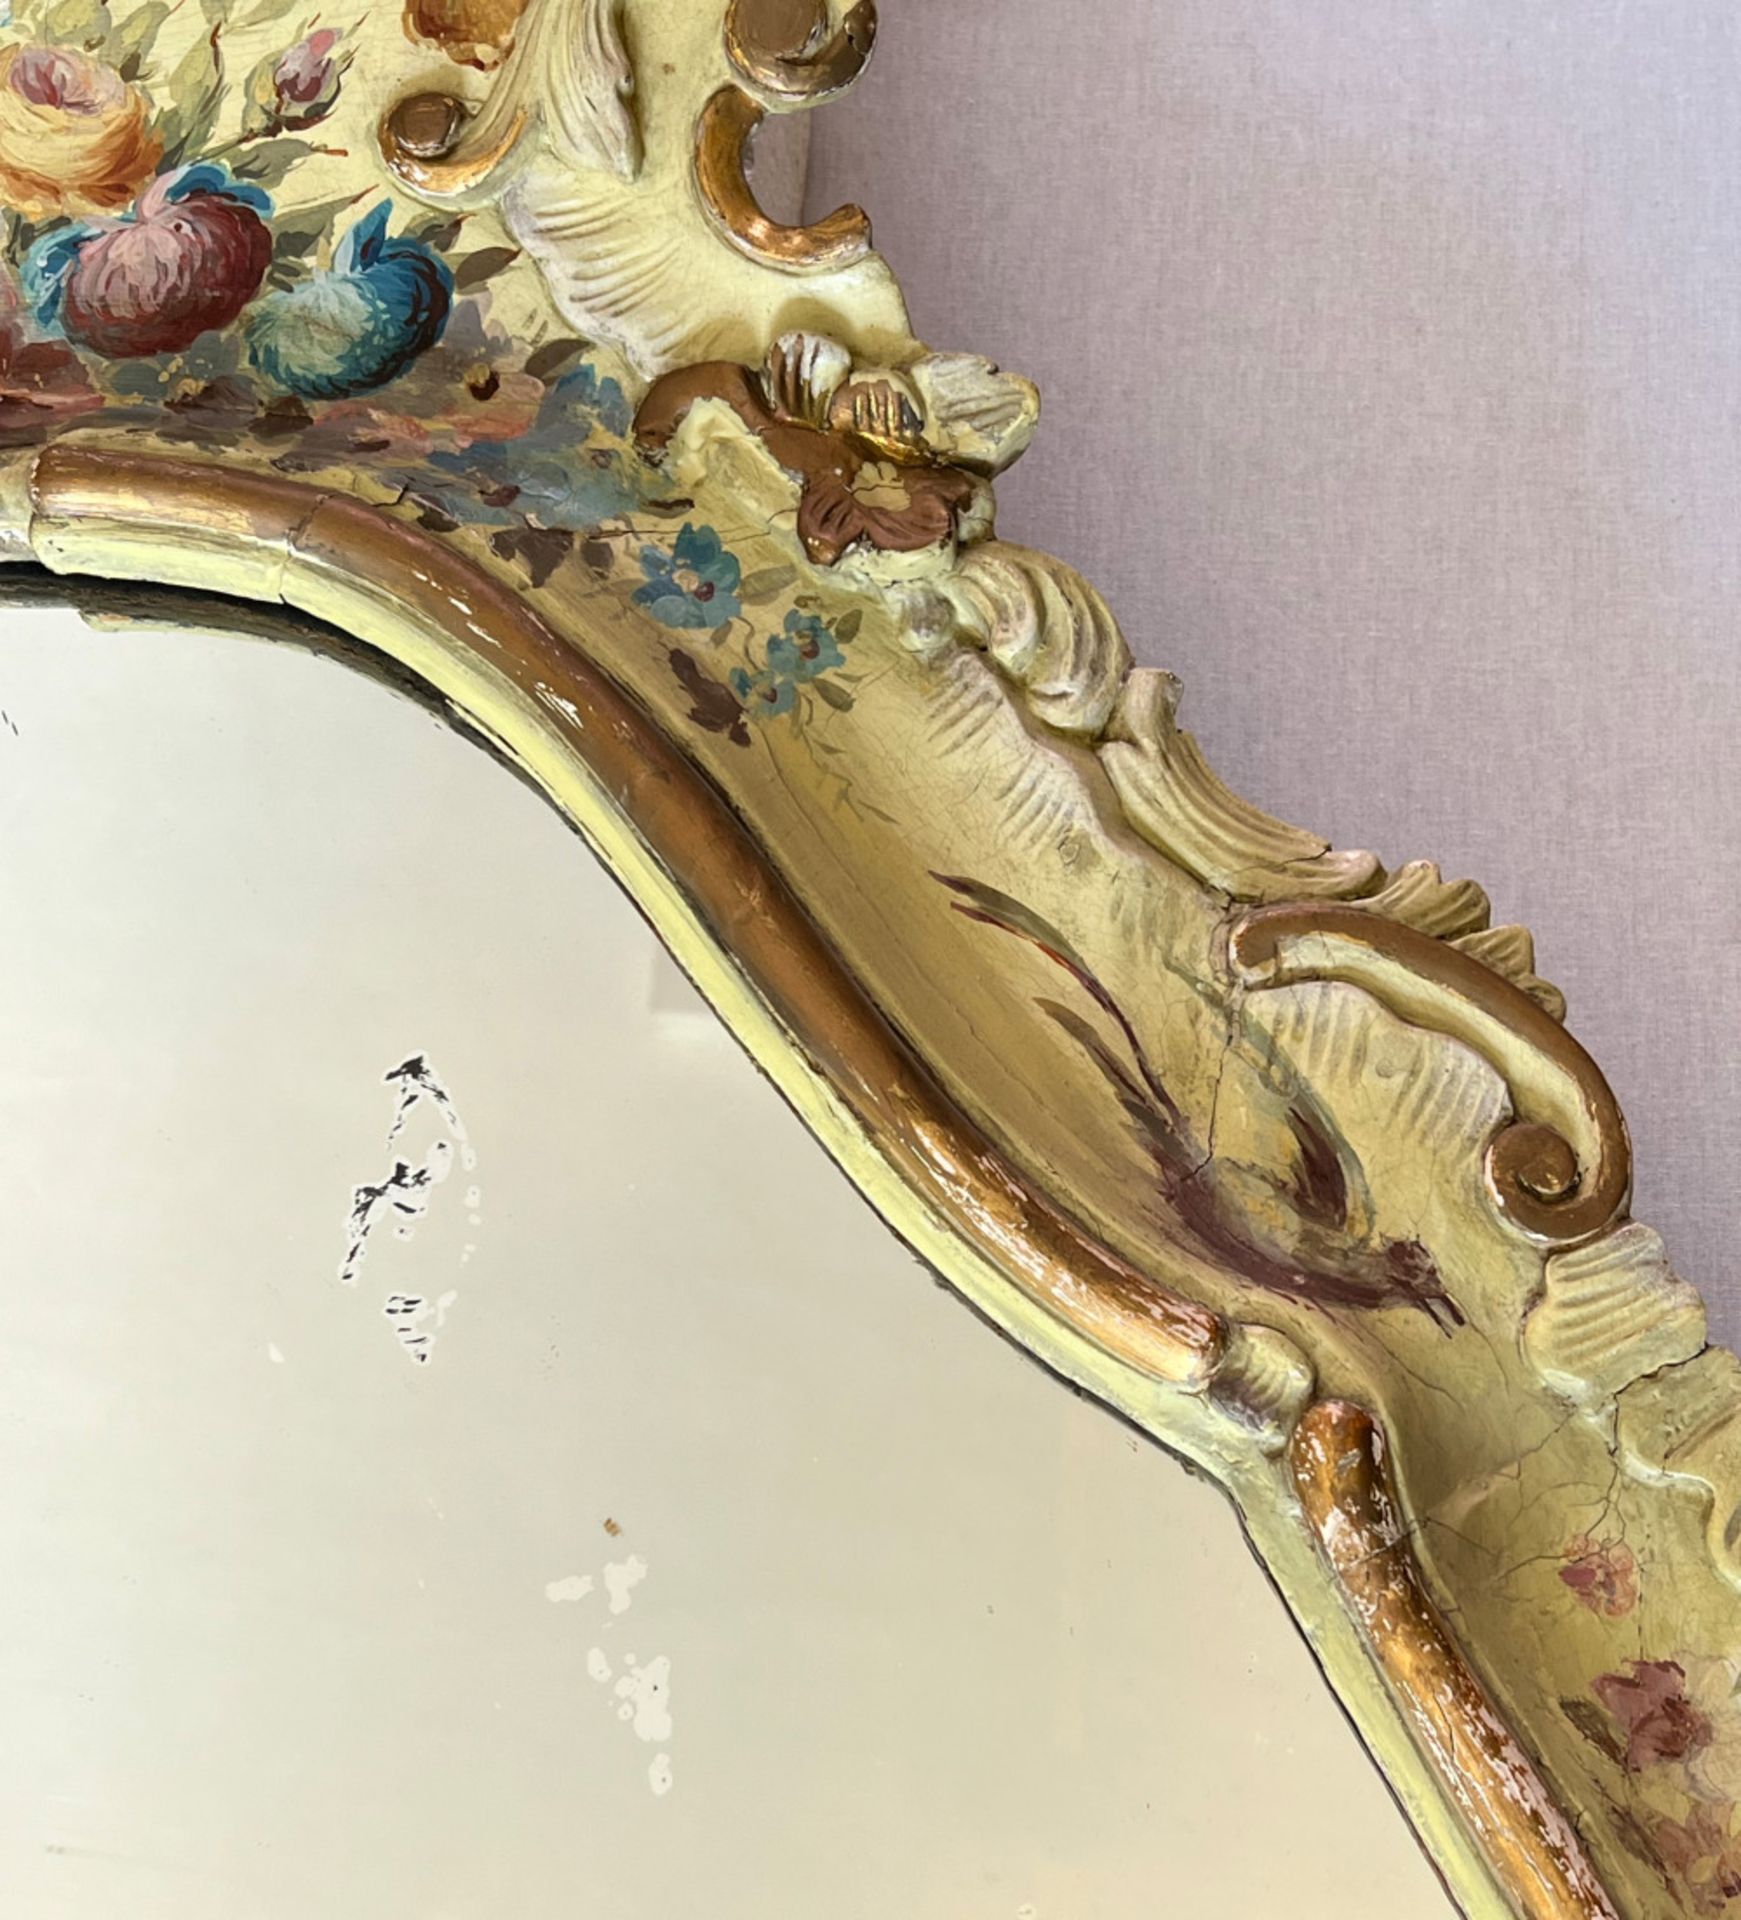 Barockspiegel mit Floralmalerei, Holz, farbig gefasst, Schlossmöbel, Altersspuren, 190 x 107 cm. - Bild 5 aus 11